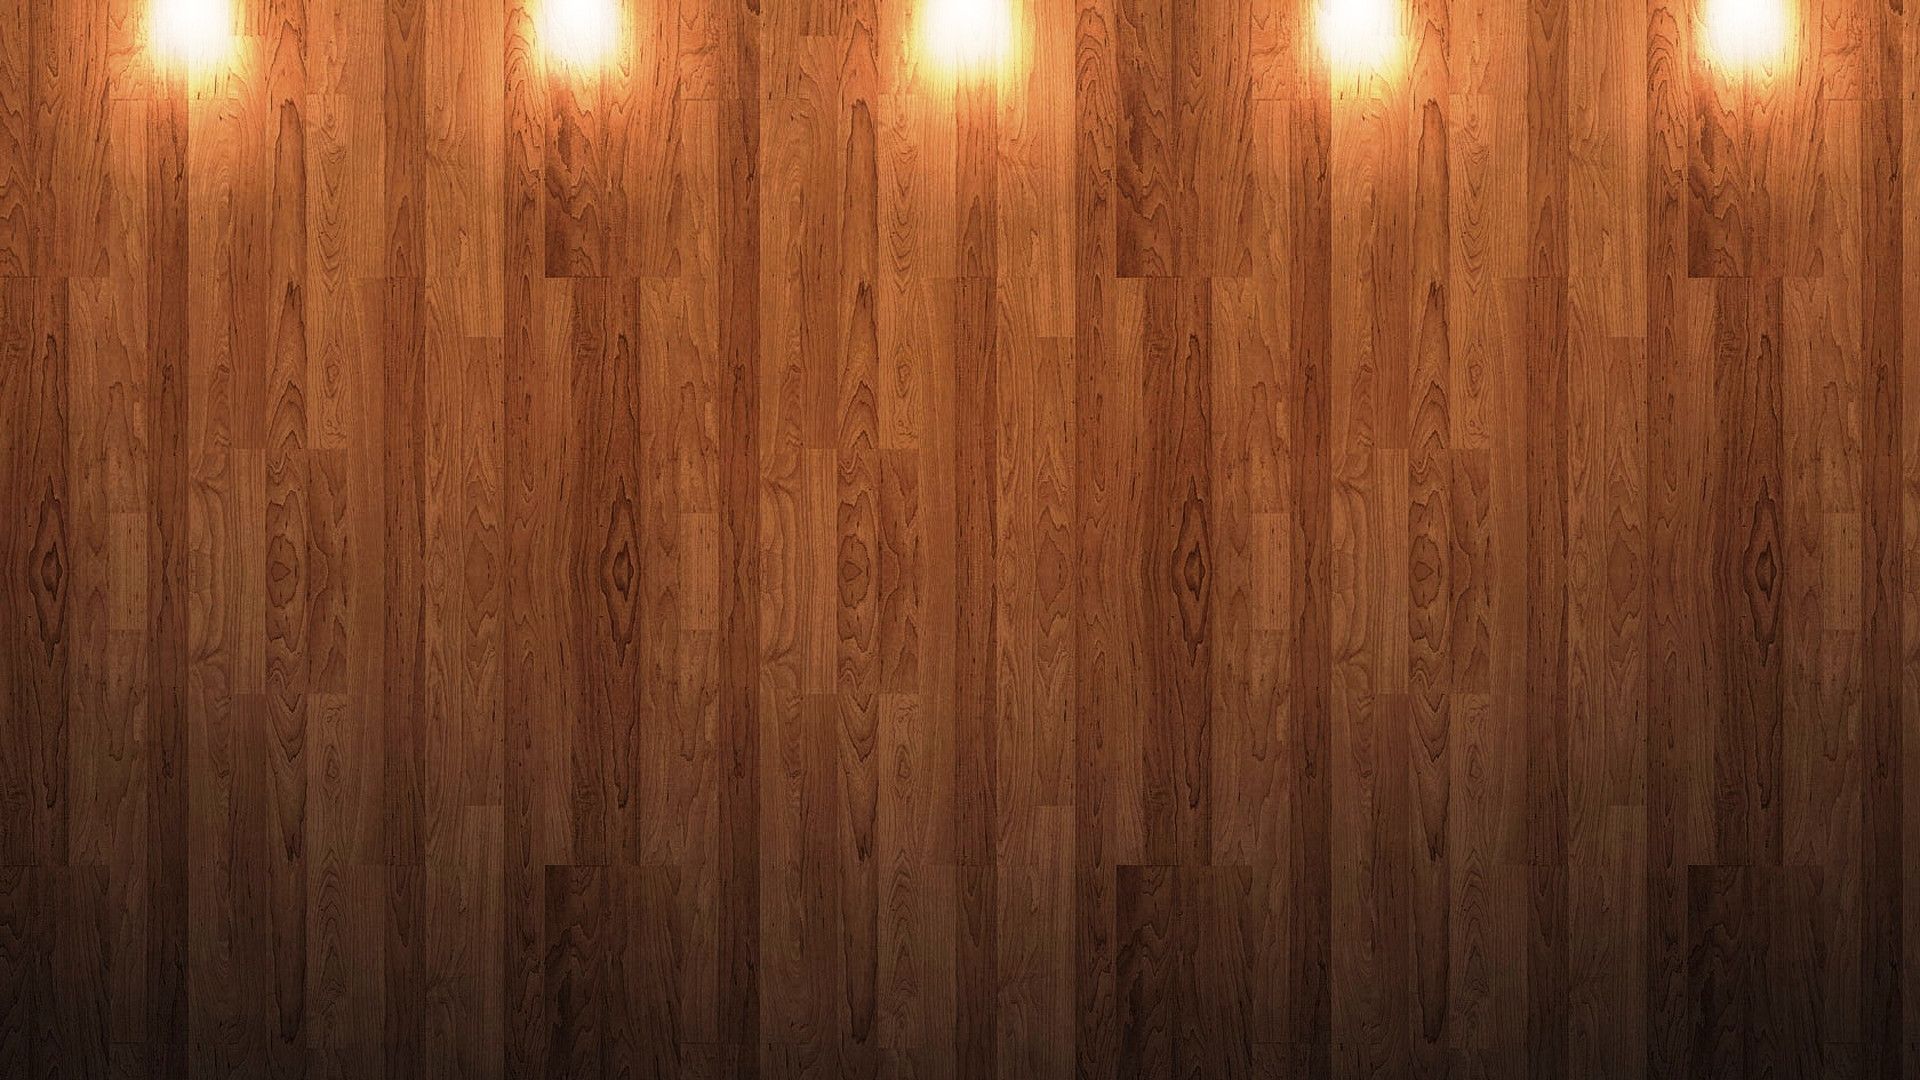 Sự kết hợp giữa đồng bộ và cao độ phân giải là điều không thể bỏ qua khi bạn muốn tìm kiếm hình nền gỗ đẹp cho thiết bị của mình. Hình nền gỗ đồng bộ cao độ phân giải sẽ đem đến cho bạn trải nghiệm tuyệt vời với các hoa văn gỗ độc đáo và chất lượng hình ảnh sắc nét đến từng chi tiết.